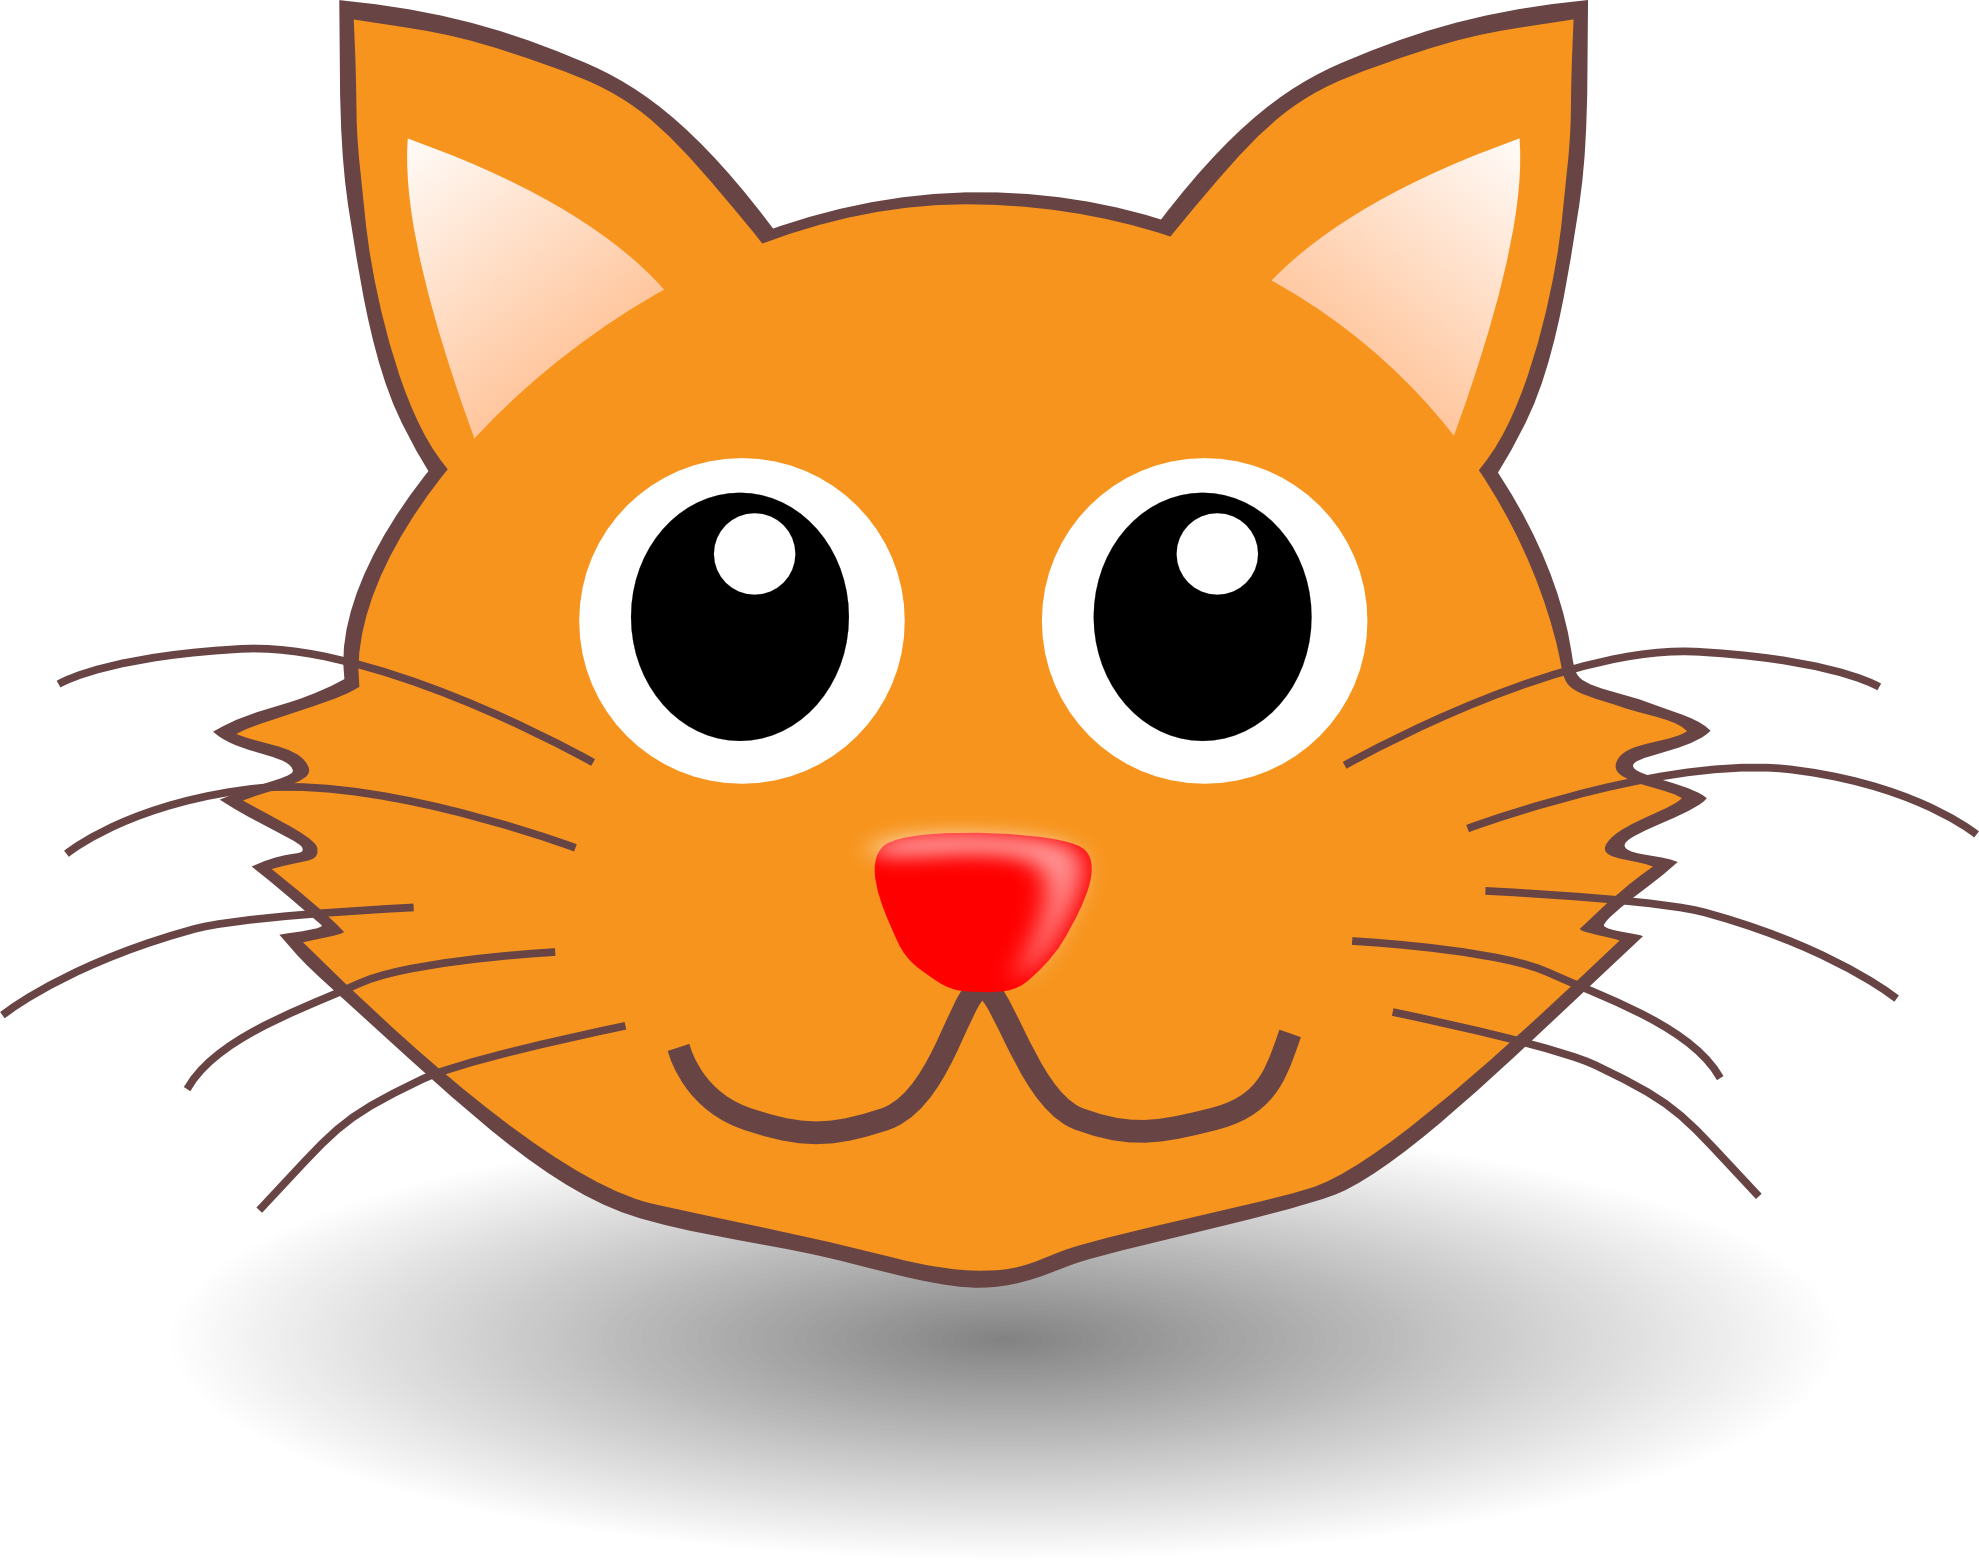 Cat Faces Cartoons Images | Free Download Clip Art | Free Clip Art ...